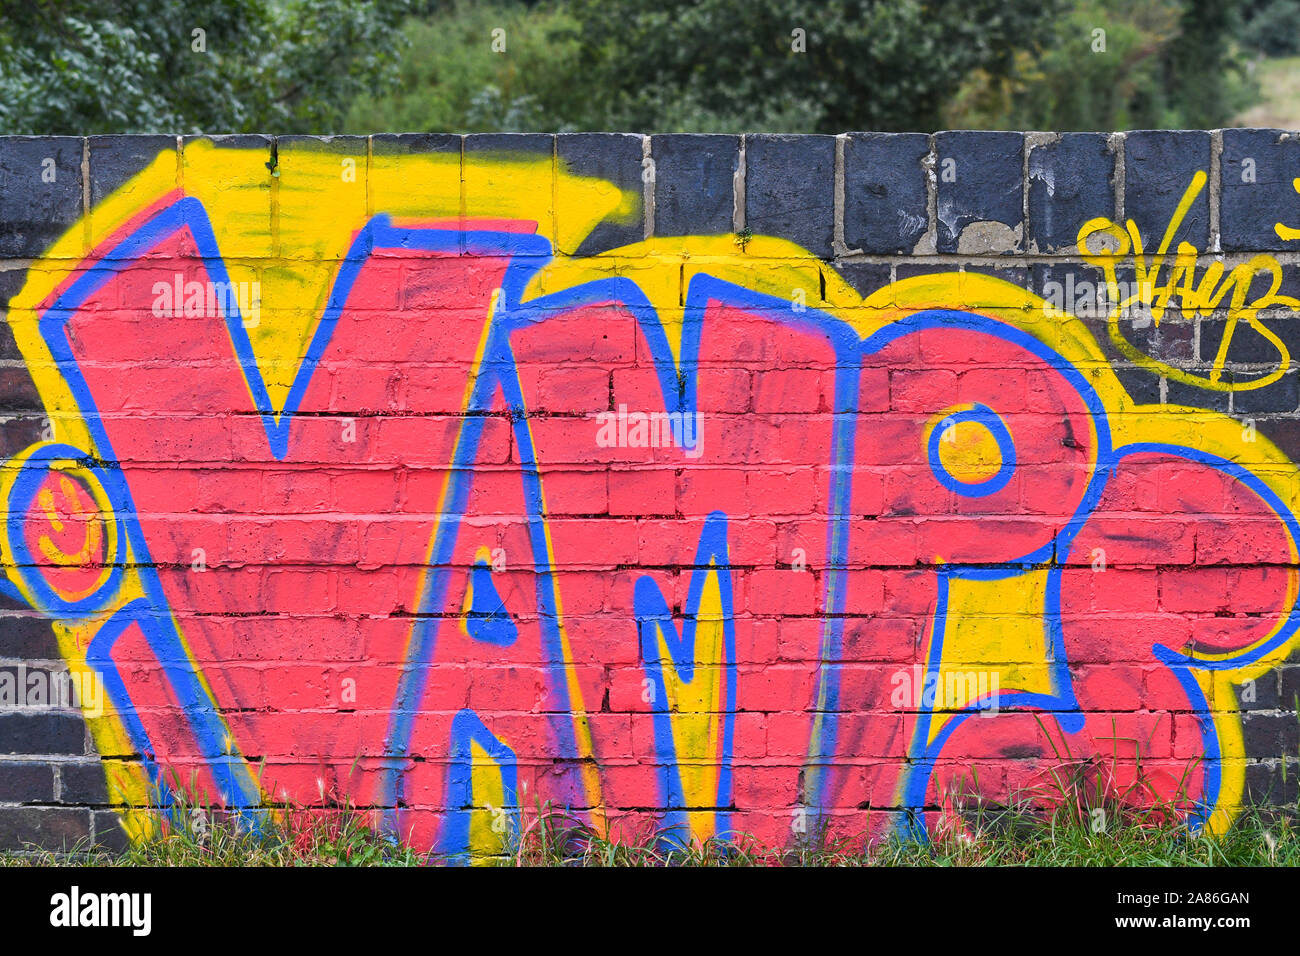 vamps graffiti on a brick wall Stock Photo